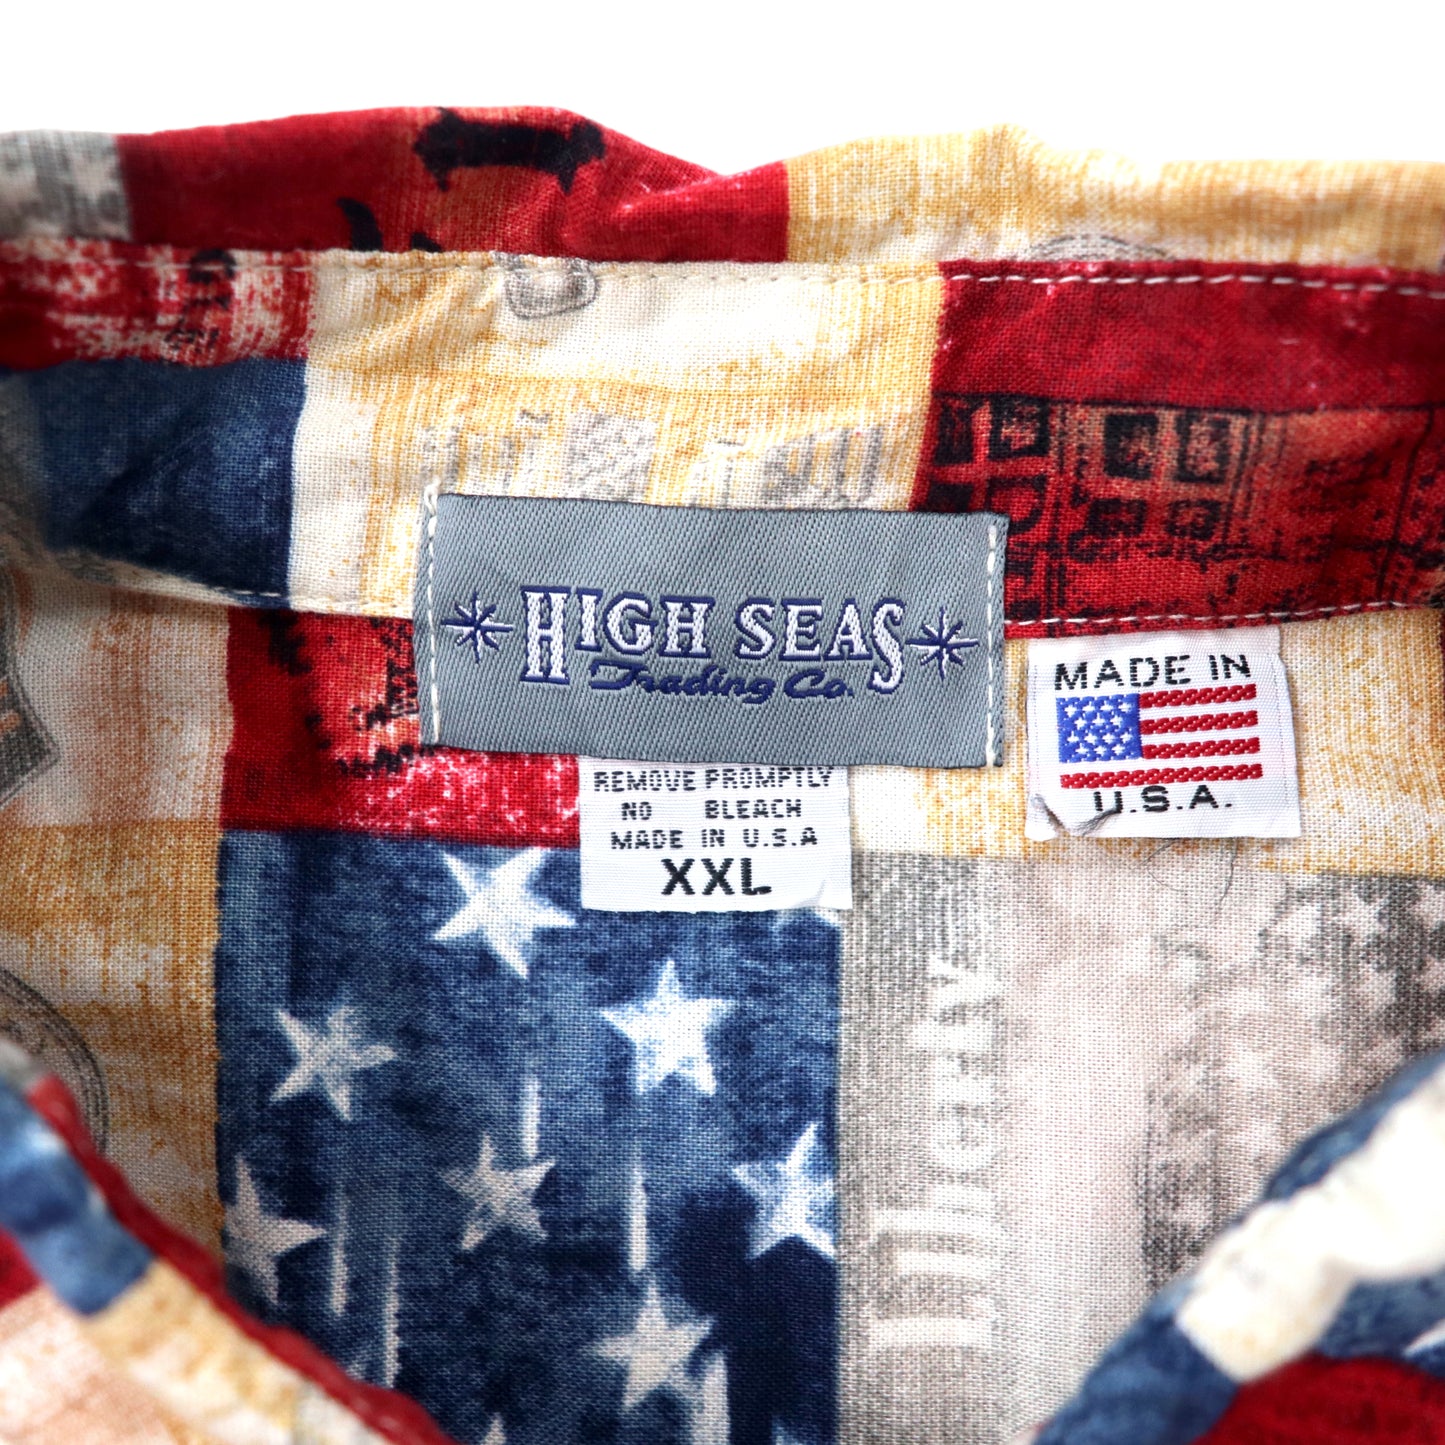 USA製 HIGH SEAS アロハシャツ XXL マルチカラー コットン 総柄 アメリカ 星条旗 ビッグサイズ